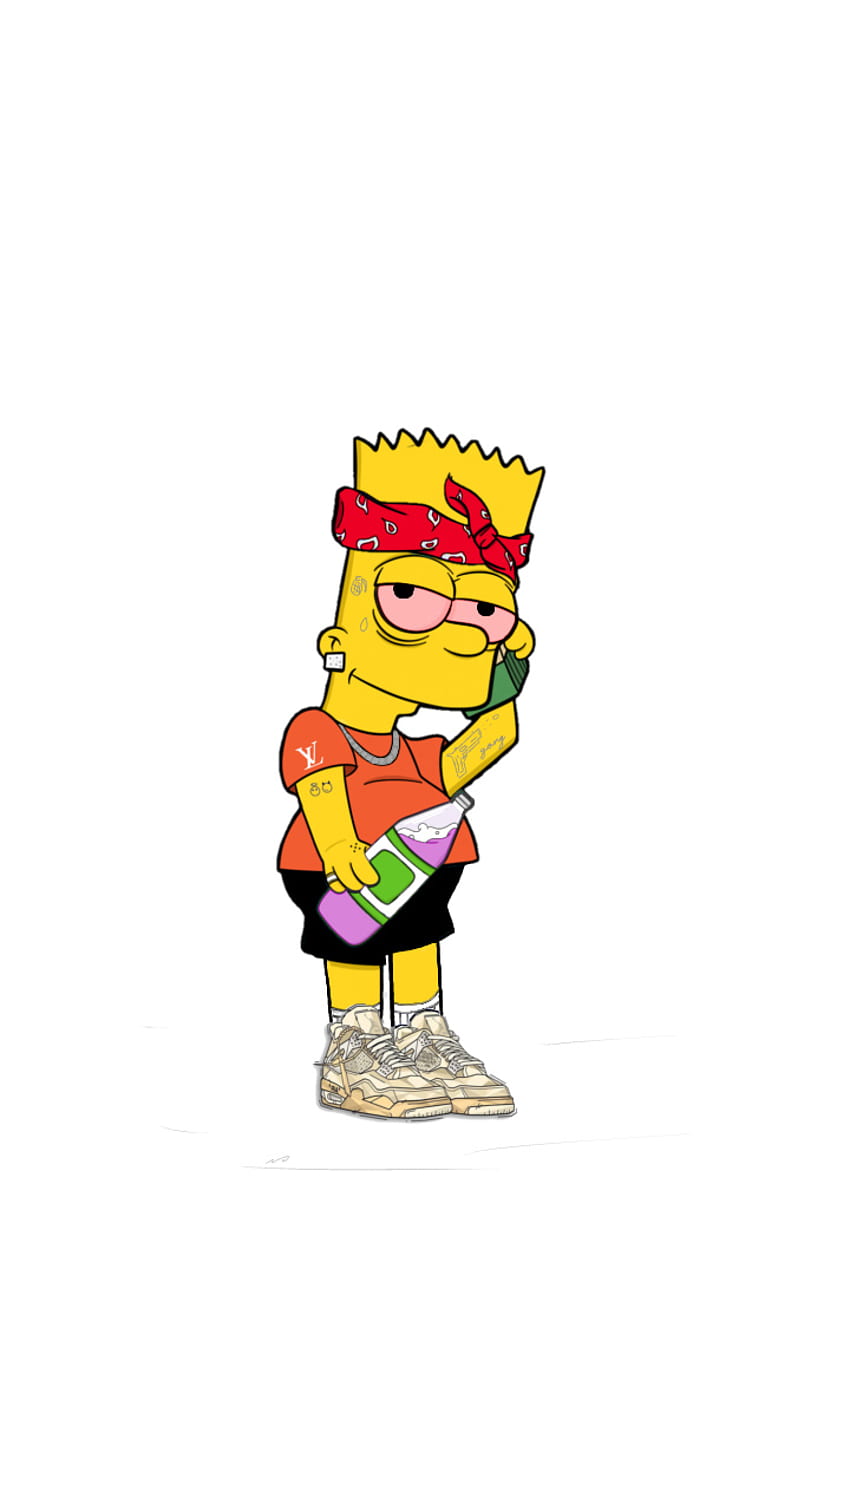 Simpson ramping, merah, tinggi, uang, edit, hypebeast, jordans, bart wallpaper ponsel HD